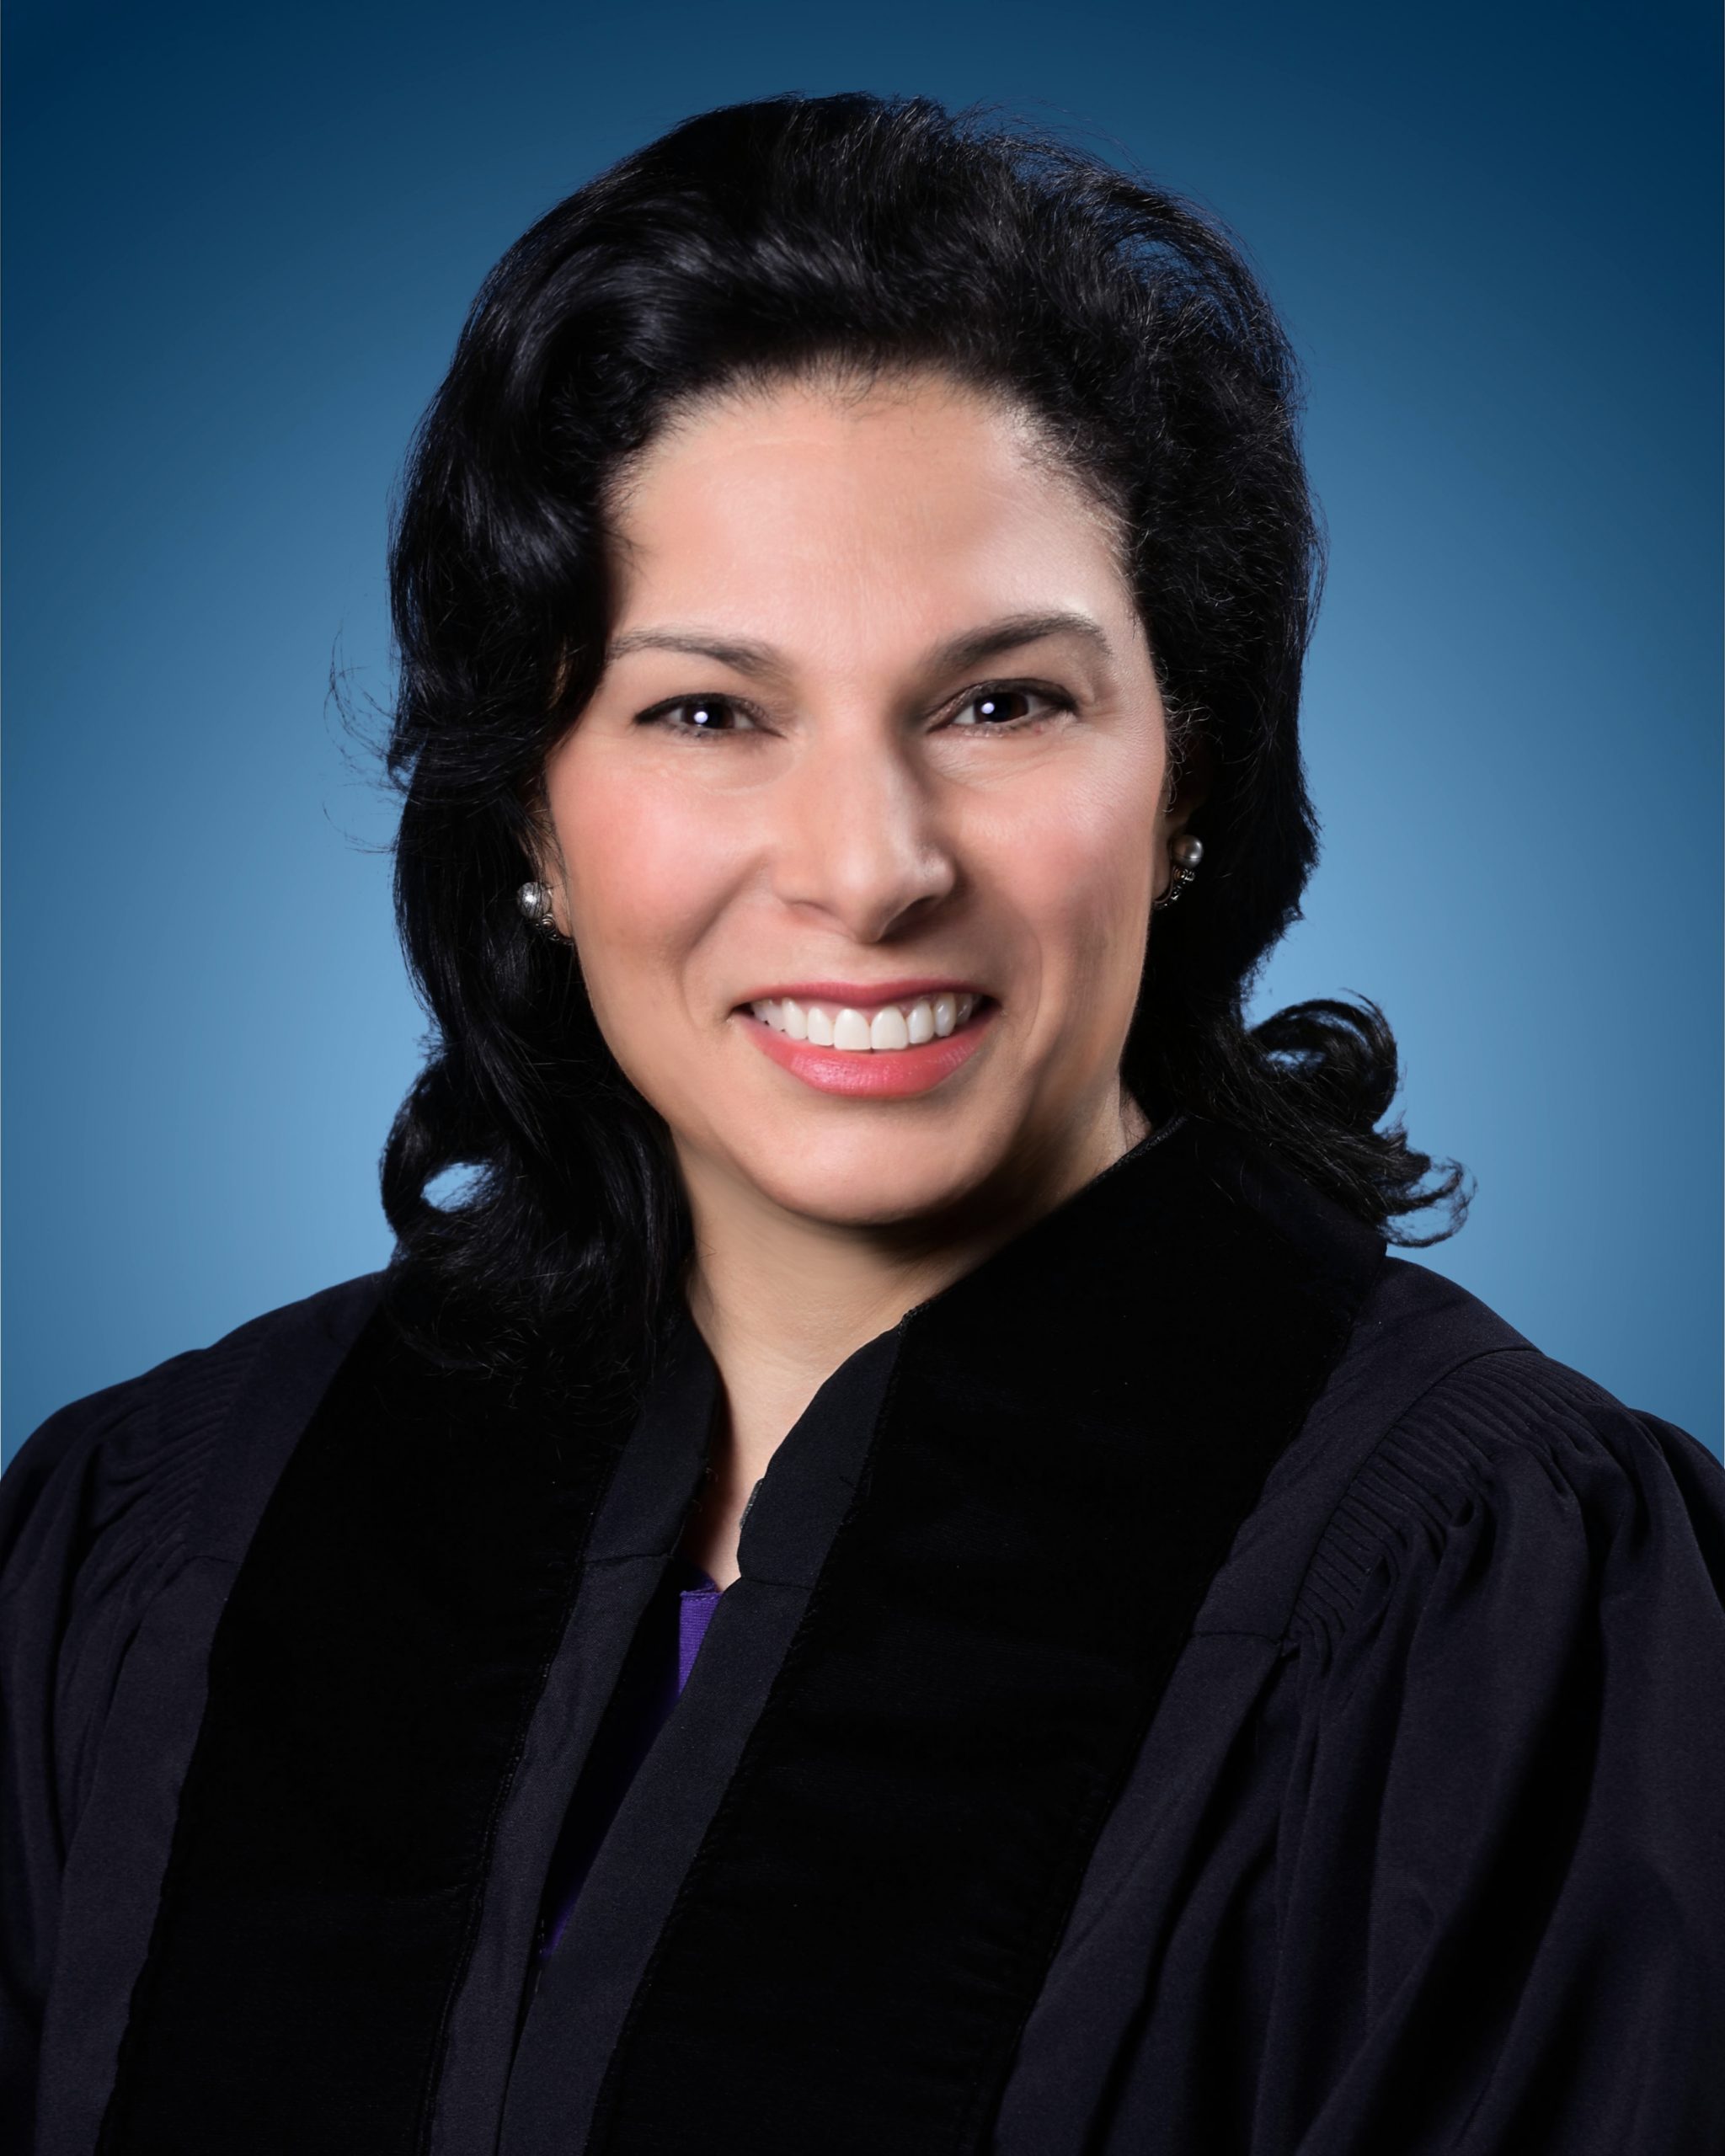 Judge Marilyn Zayas